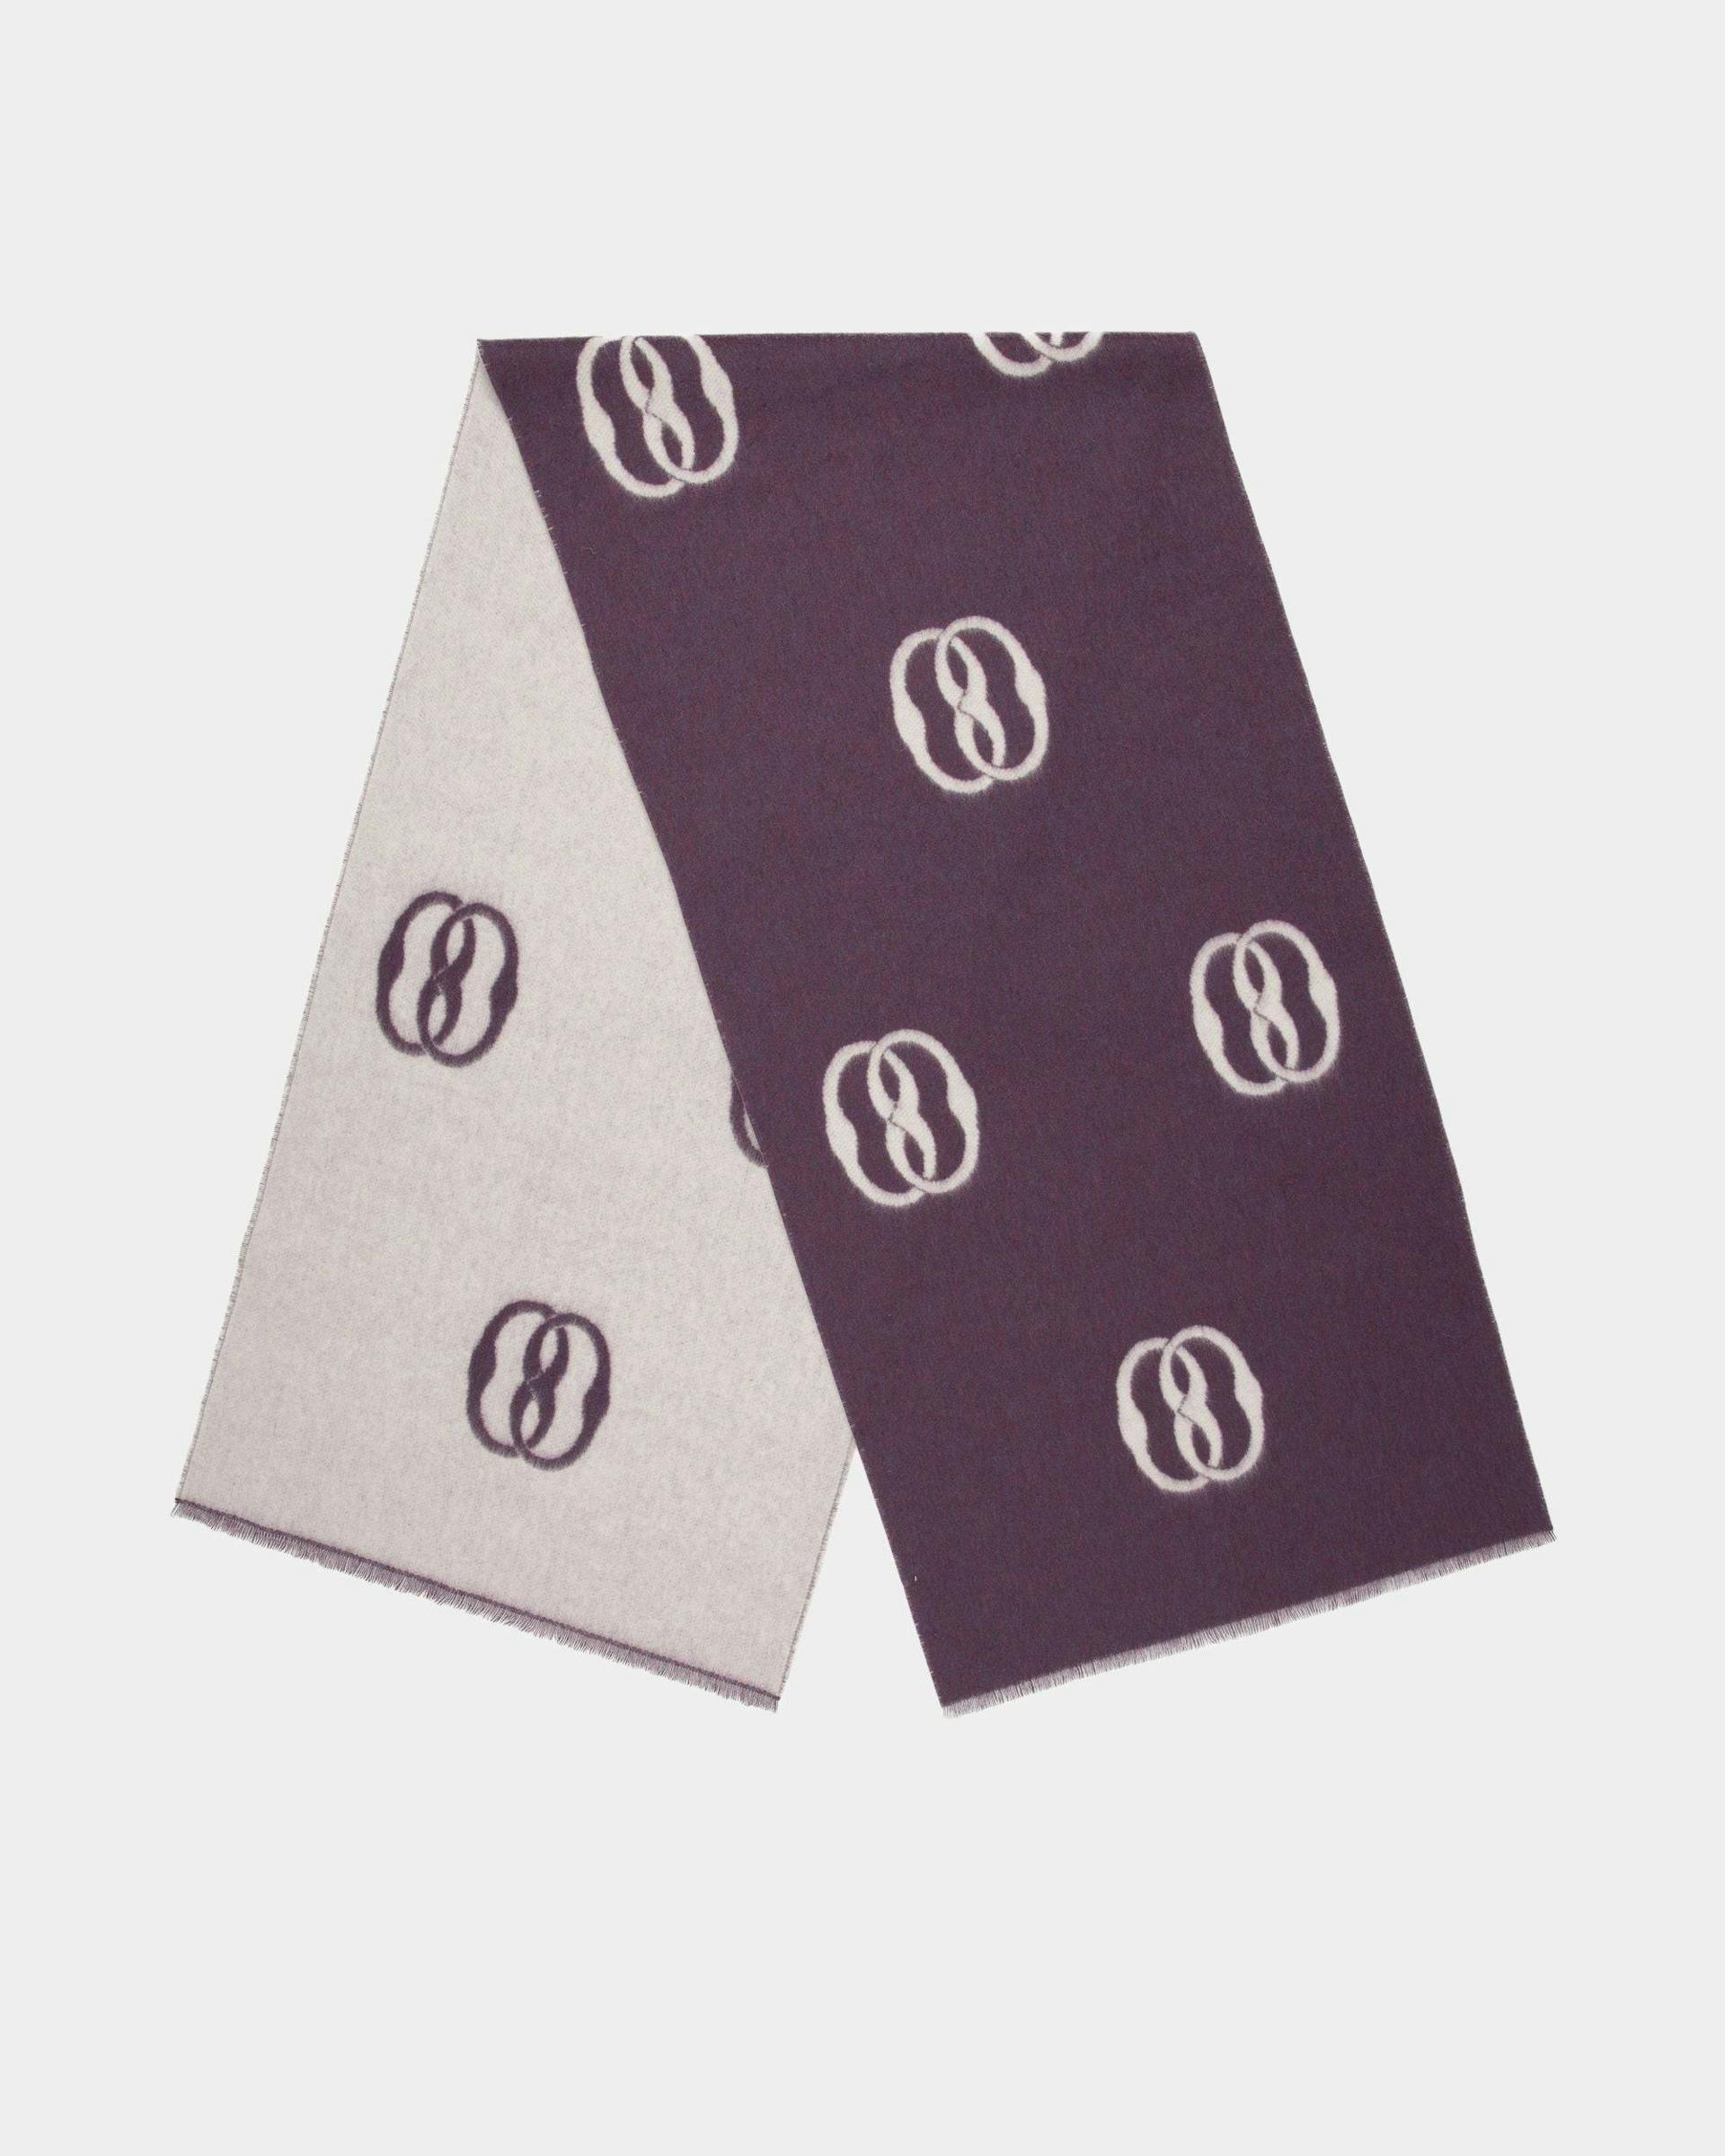 Écharpe Emblem En tissu orchidée et blanc poussière - Femme - Bally - 01